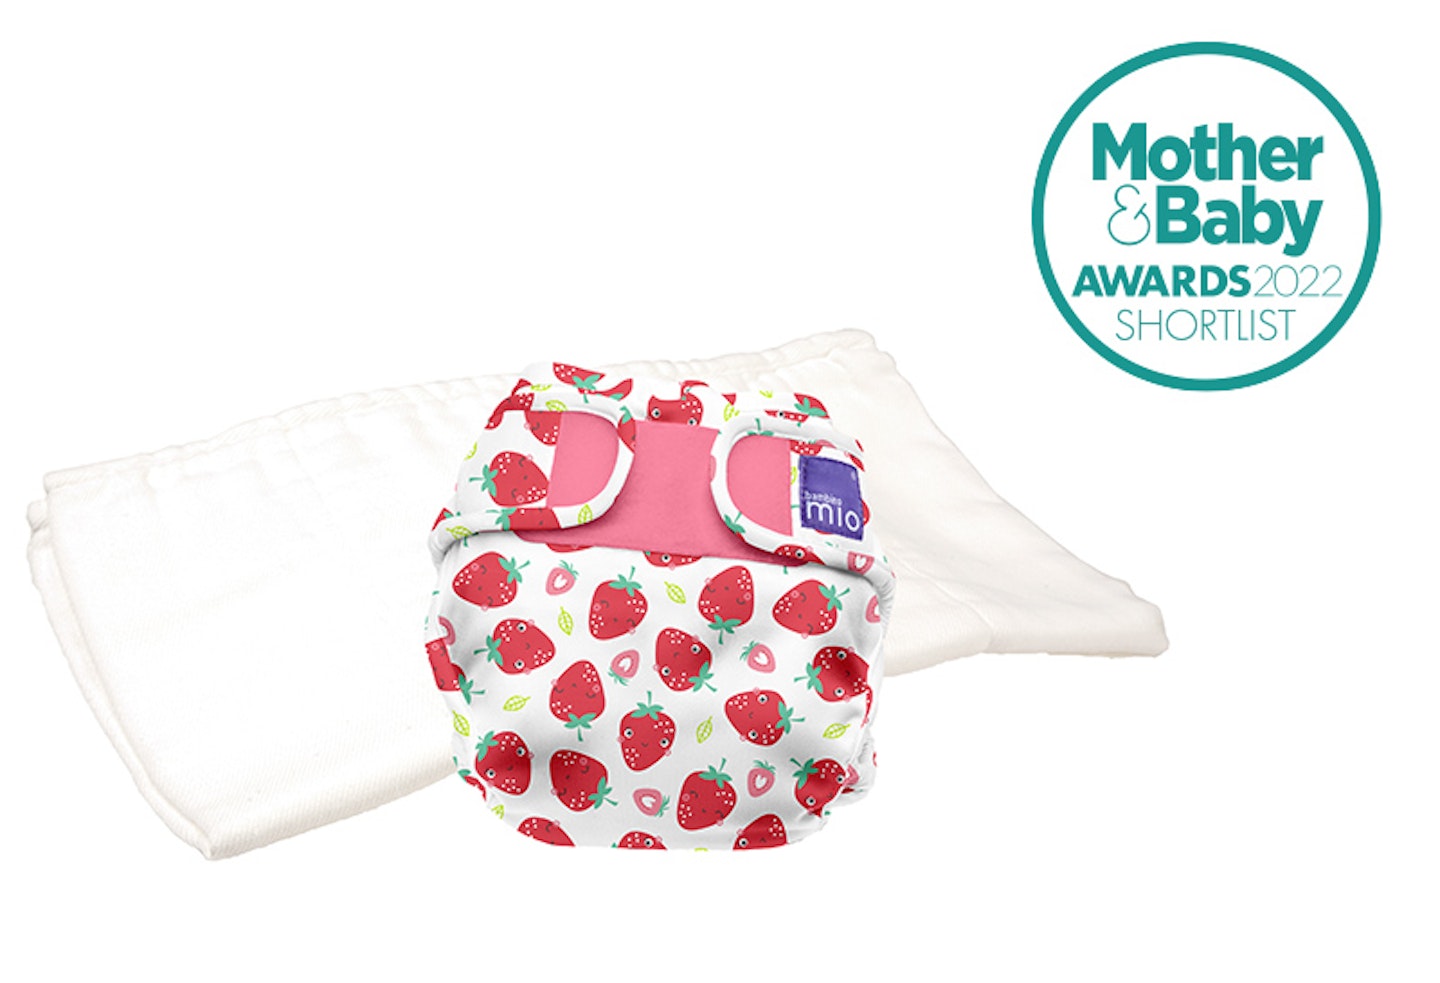 mioduo Two-Piece Reusable diaper | BAMBINO MIO®